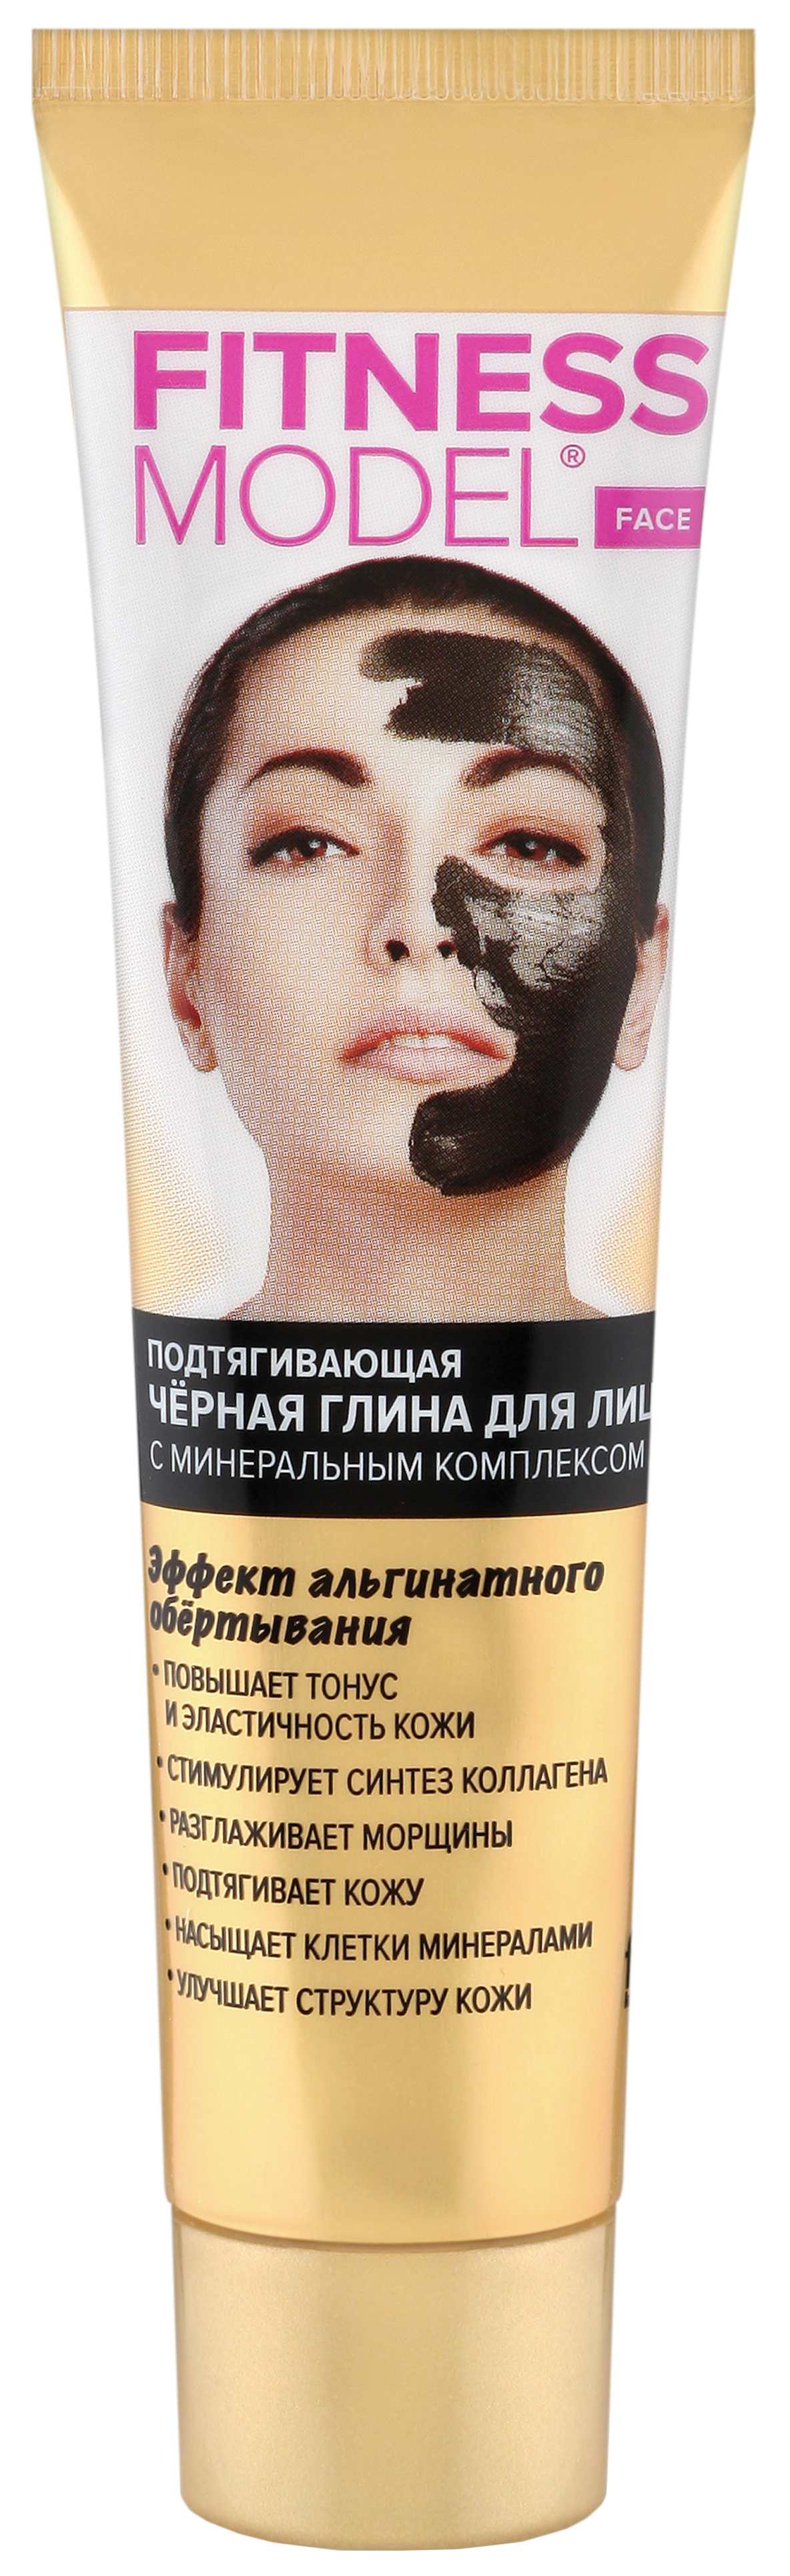 Маска для лица ФИТОкосметик FITNESS MODEL Черная глина 45 мл pl маска для лица многоразовая неопреновая черная с сердечком 1 шт